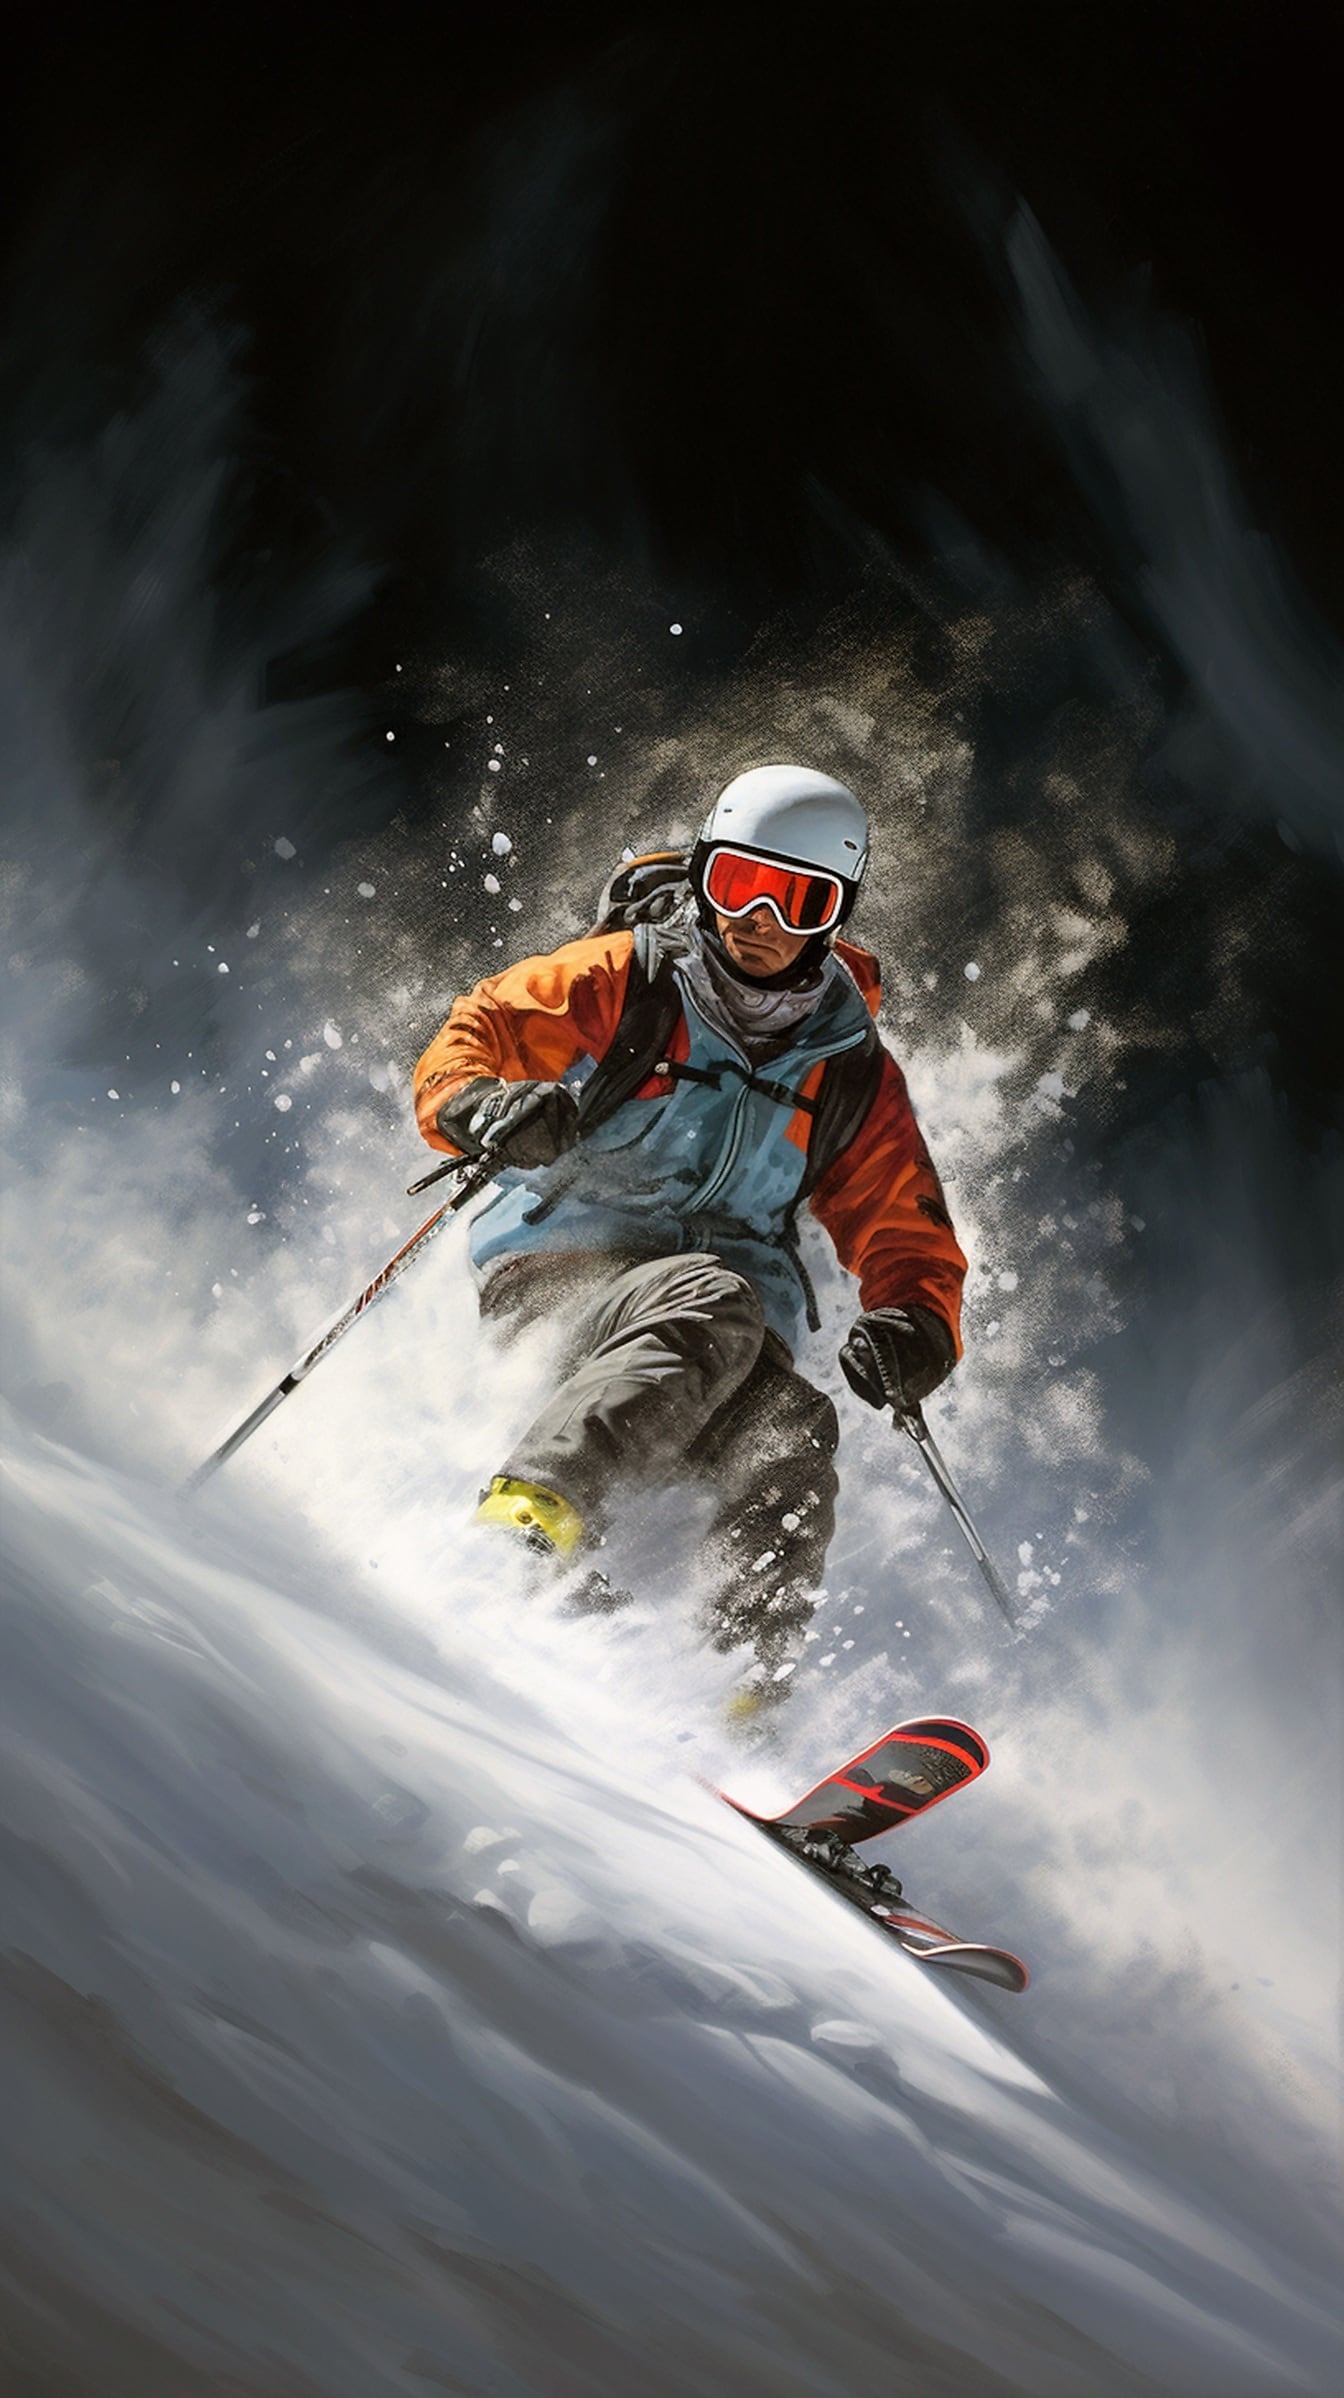 Мужчина-экстремал катается на лыжах по заснеженному горному склону